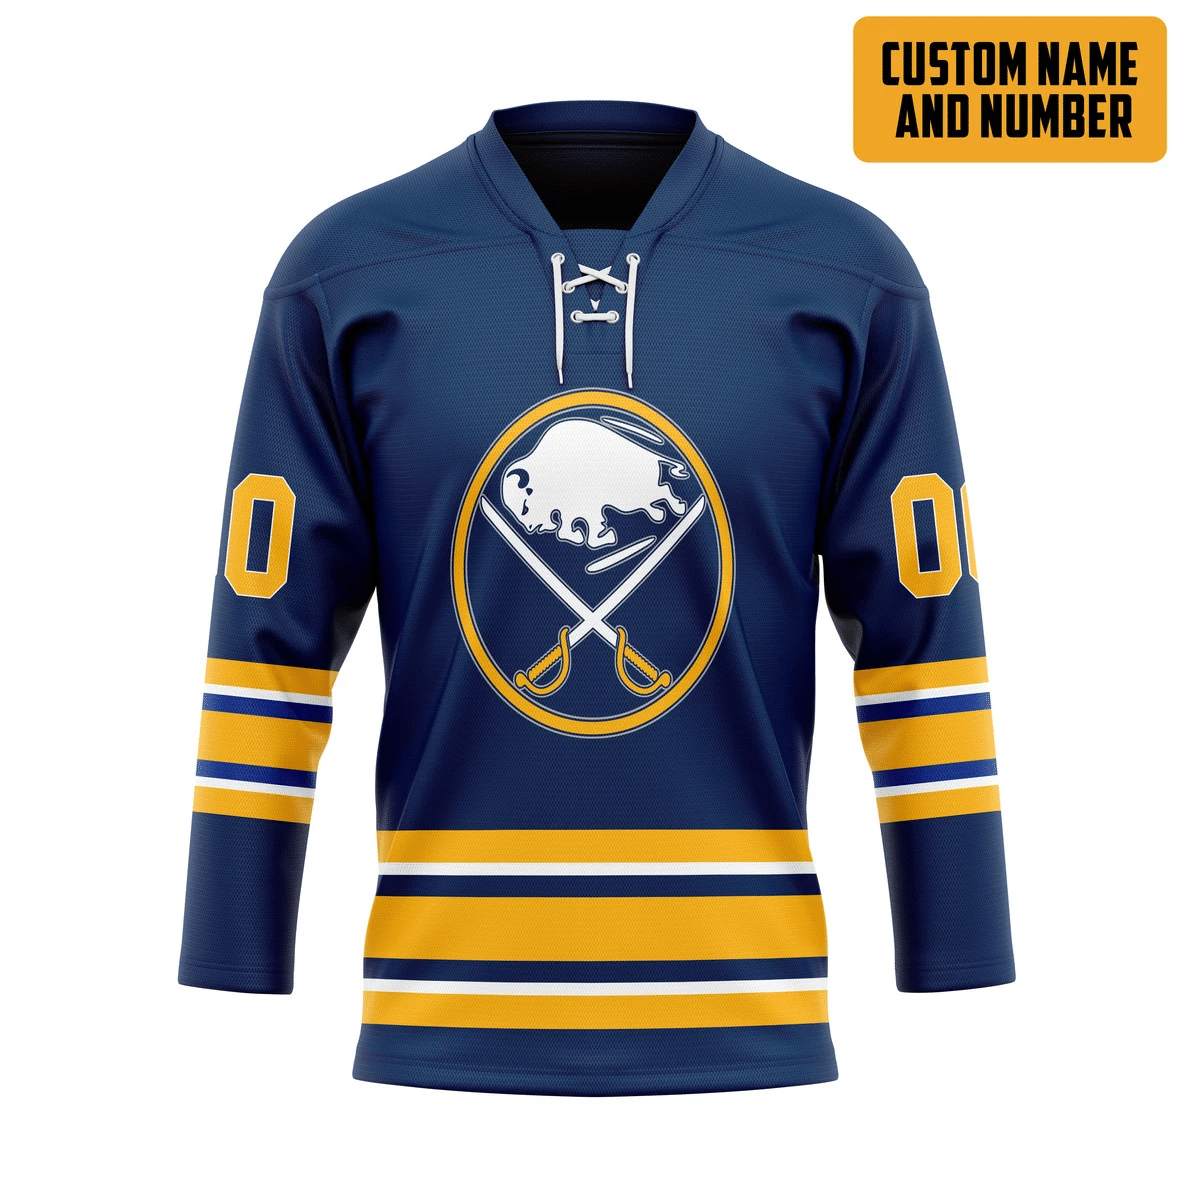 It's only $50 so don't miss out - Be sure to pick up a new hockey shirt today! 361